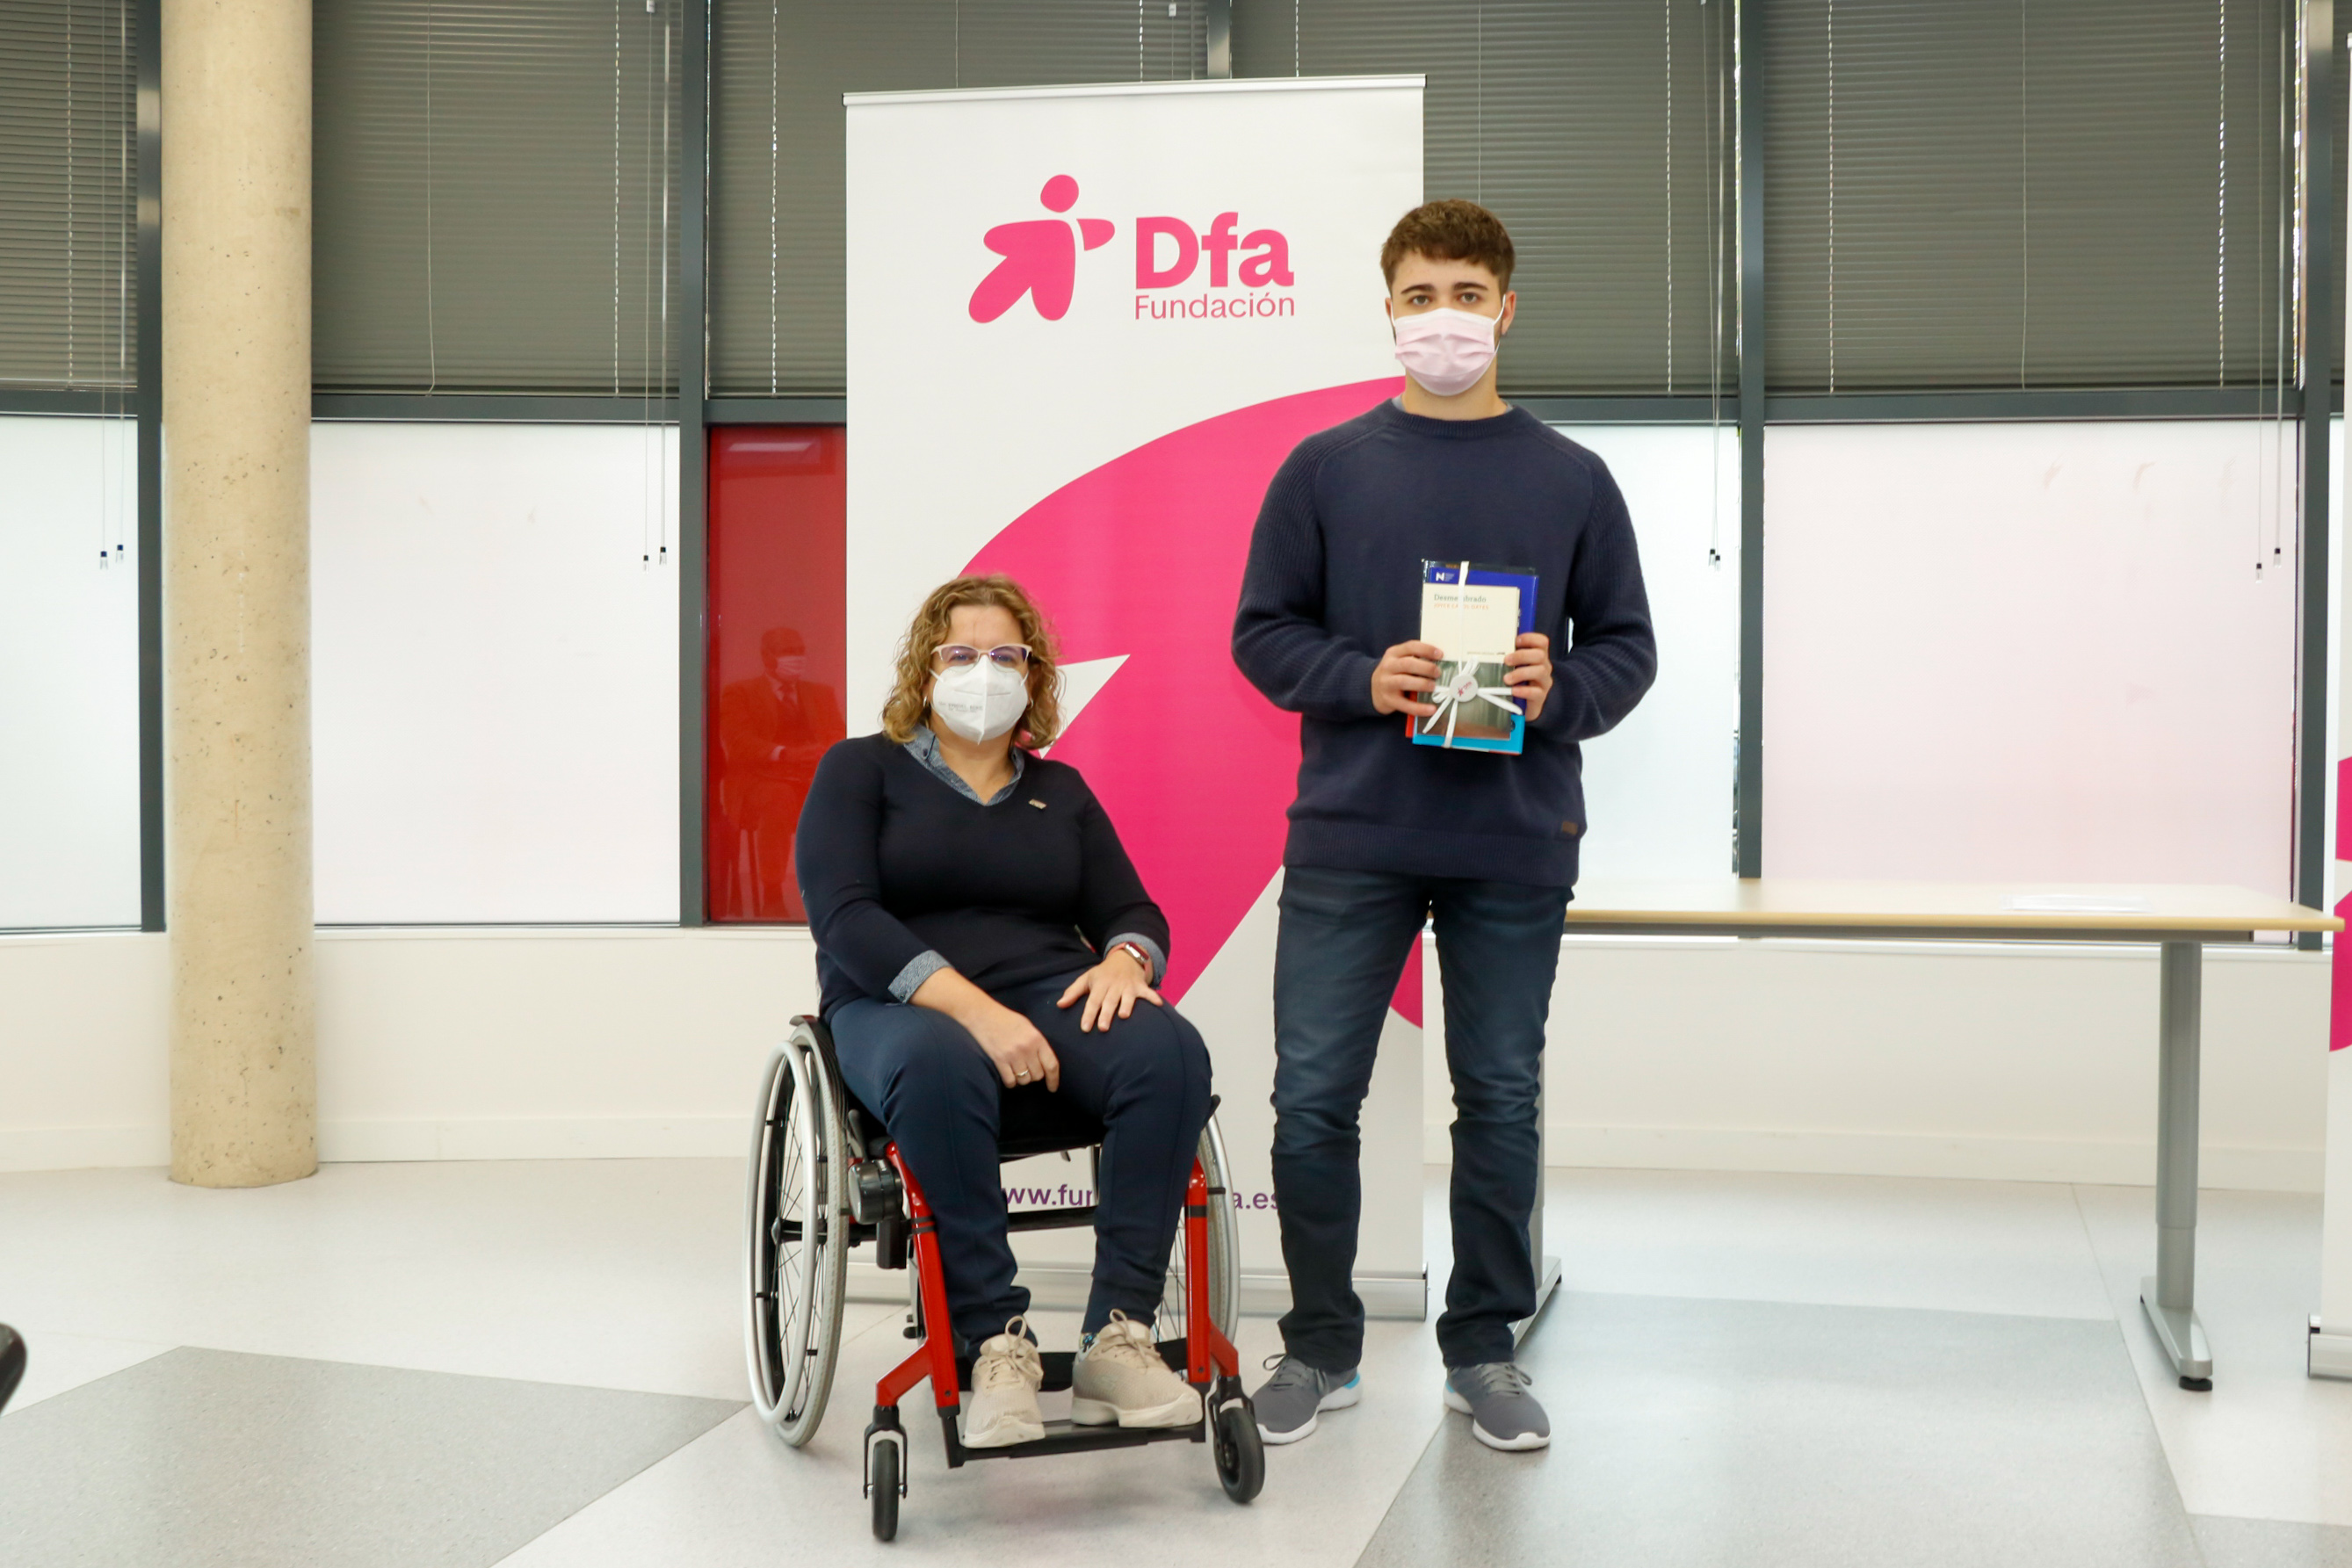 Un joven posa en una entrega de premios junto a una mujer en silla de ruedas